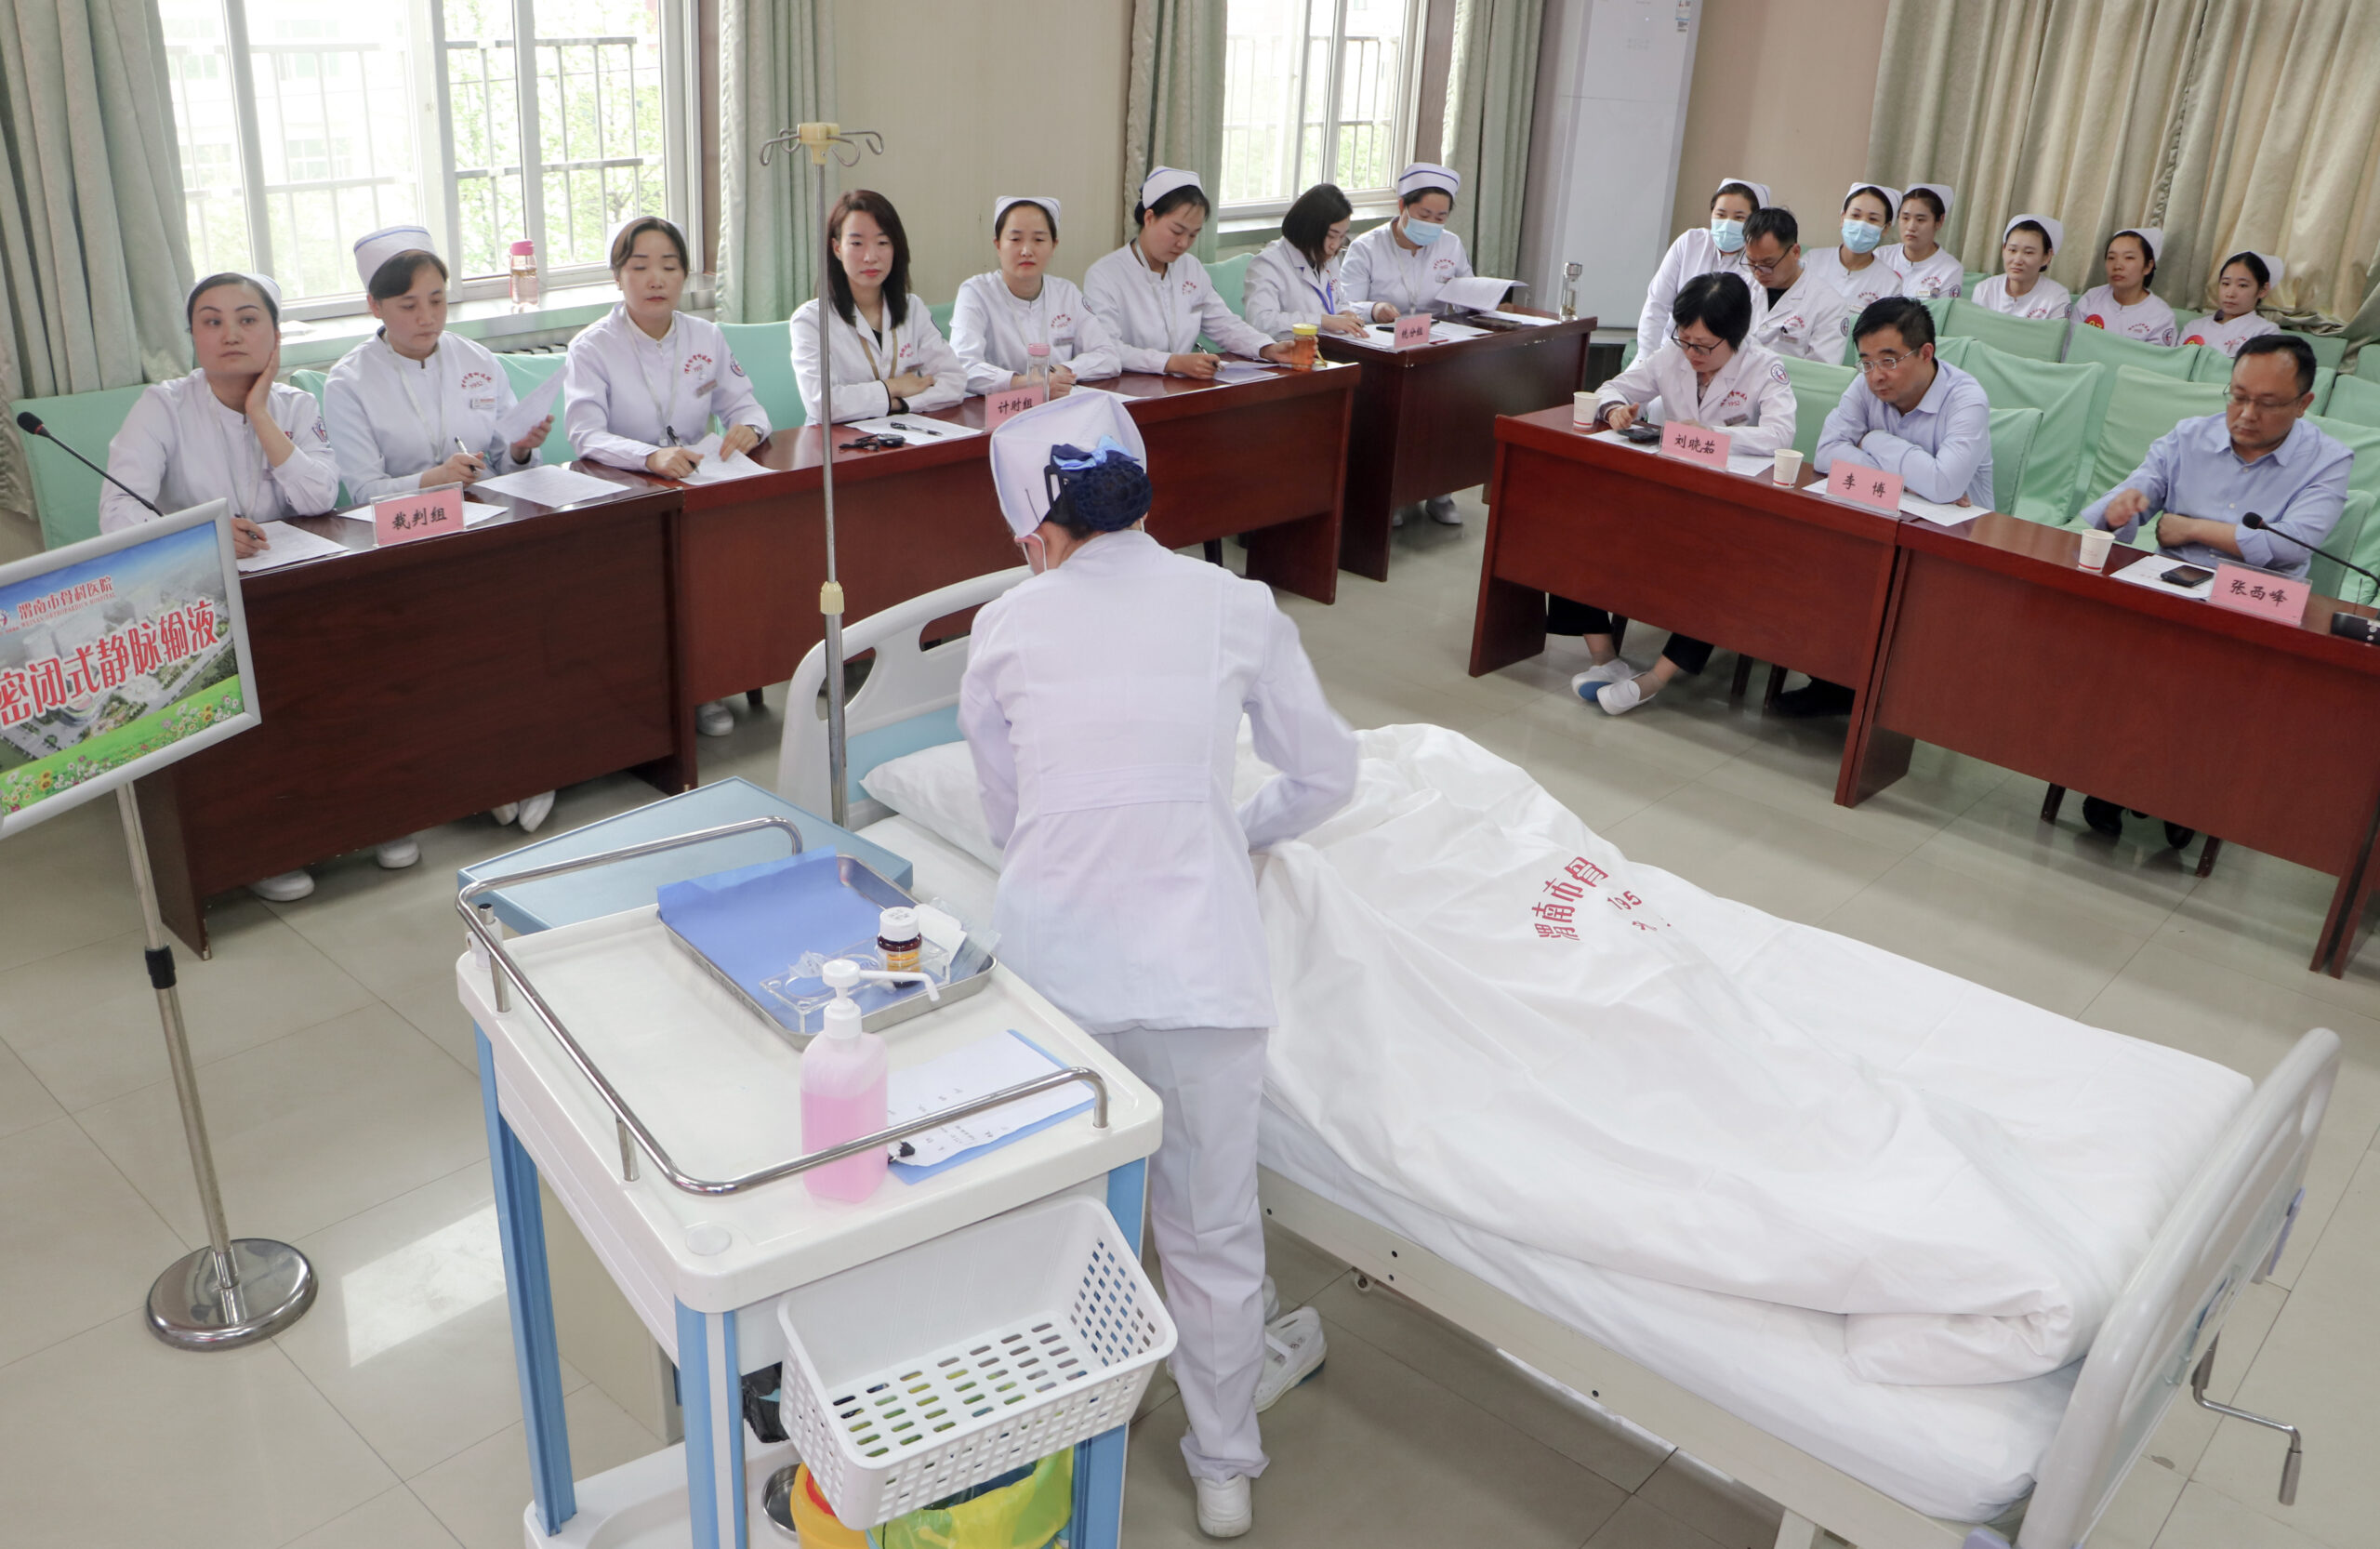 渭南市骨科医院举办护士节护理技术大比武 助推医疗服务能力再提升